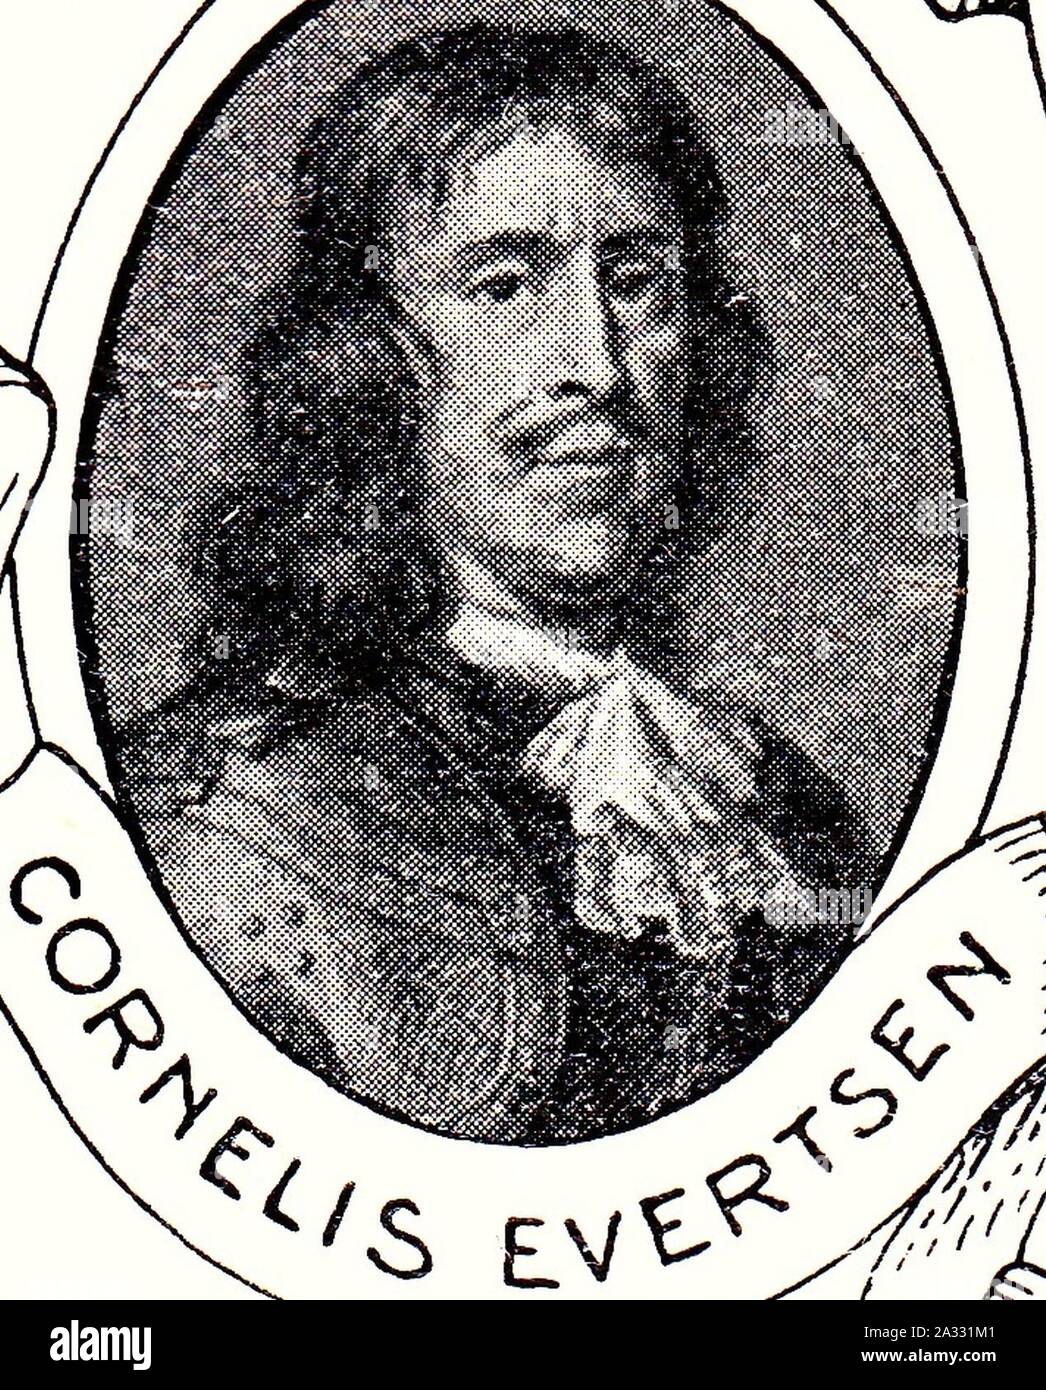 Evertsen, C. (1610-1666), gesneuveld tijdens vierdaagse zeeslag. Stock Photo